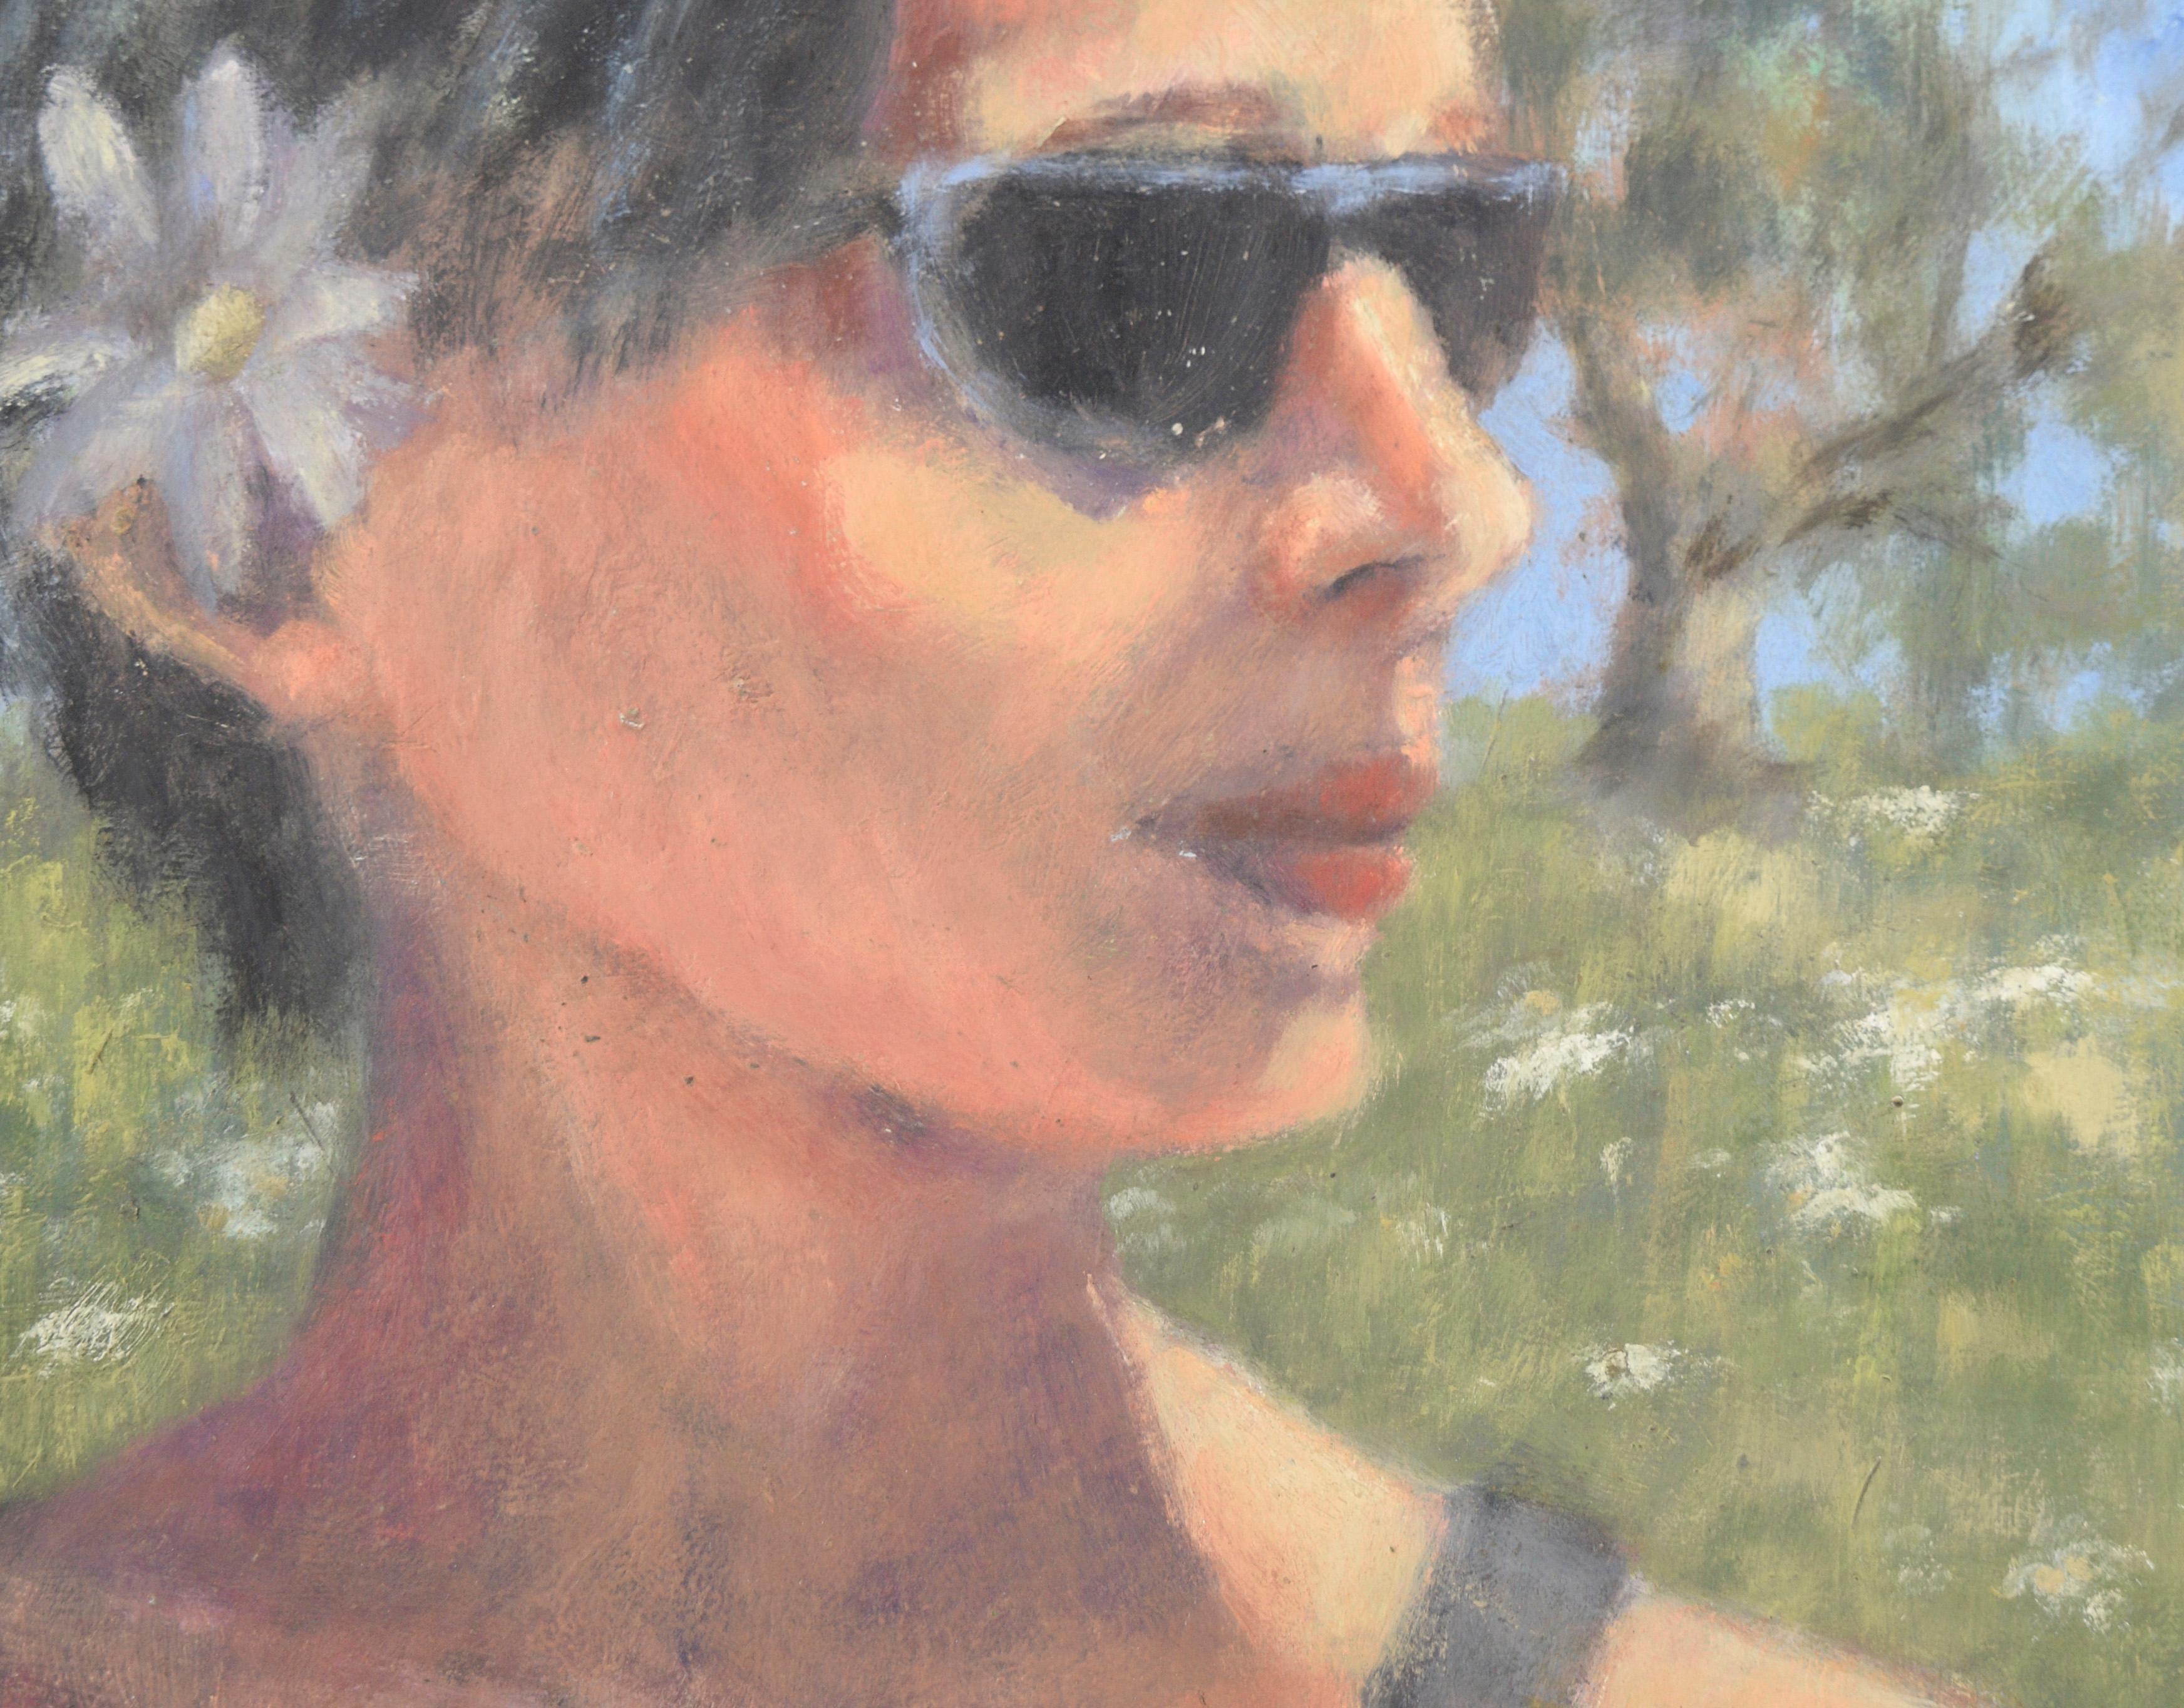 Portrait d'une femme californienne avec des lunettes de soleil en acrylique sur Masonite

Portrait d'une femme avec des lunettes de soleil par une artiste inconnue de la côte de Californie centrale, Maria Pavao Hadsell (Potugal/Américaine, 20e